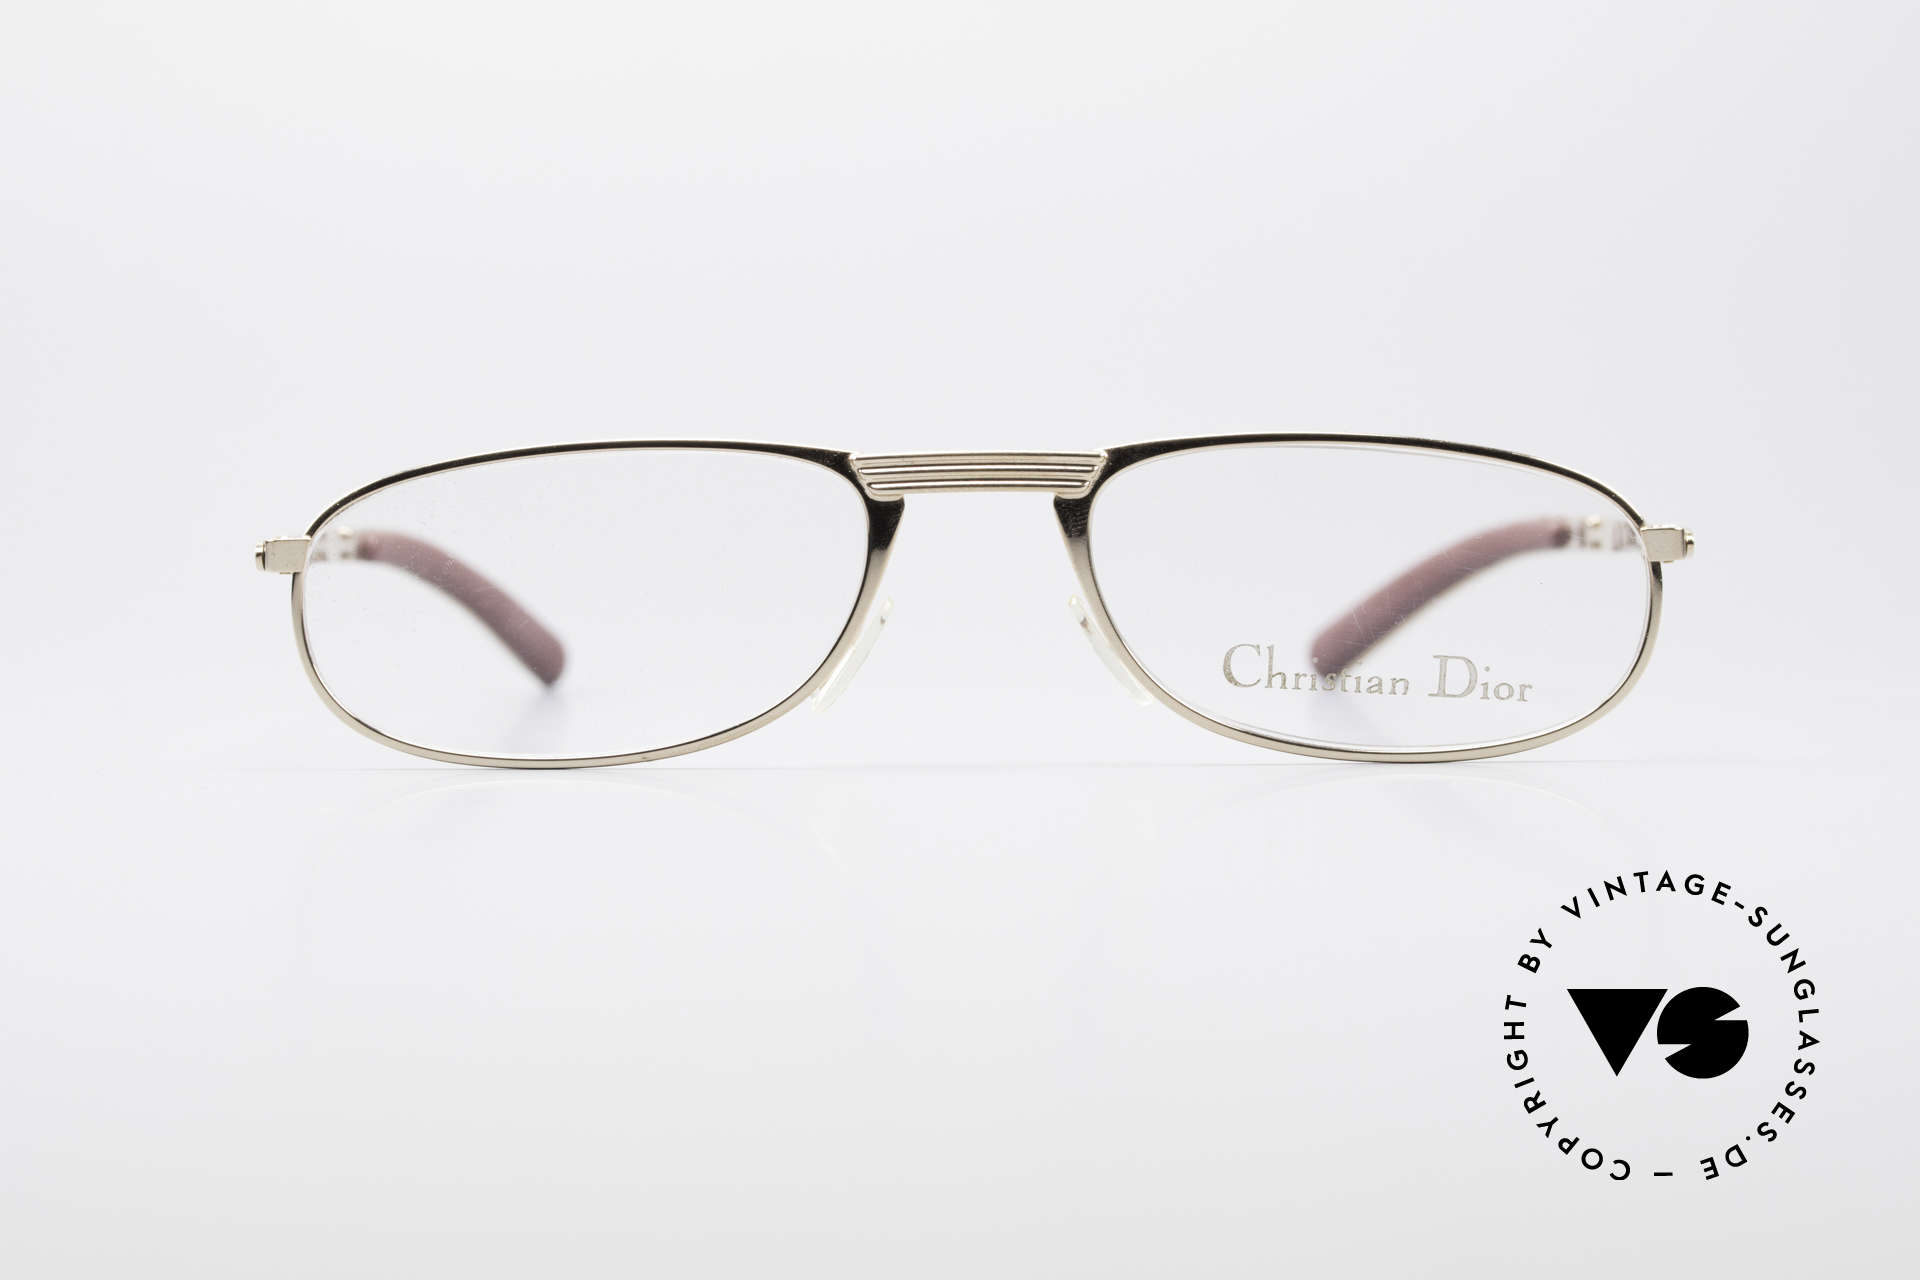 Christian Dior 2727 Designer Reading Eyeglasses, just timeless & elegant (true gentlemen's specs), Made for Men